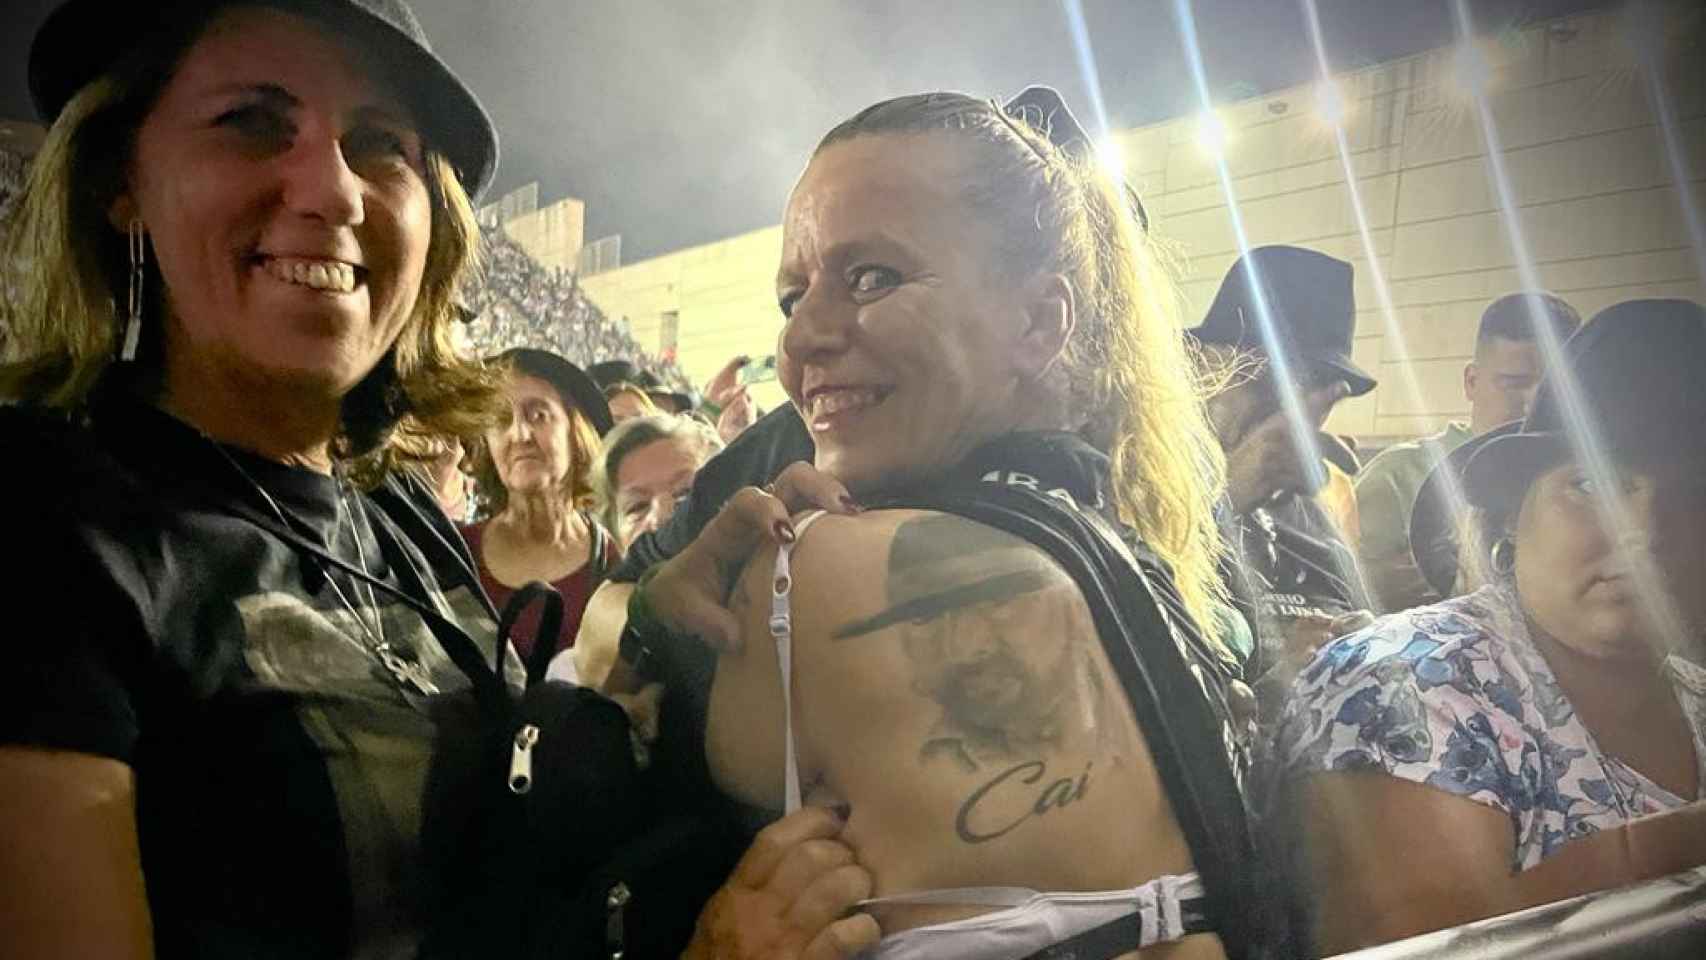 El tatuaje de la espalda de una de sus seguidoras.